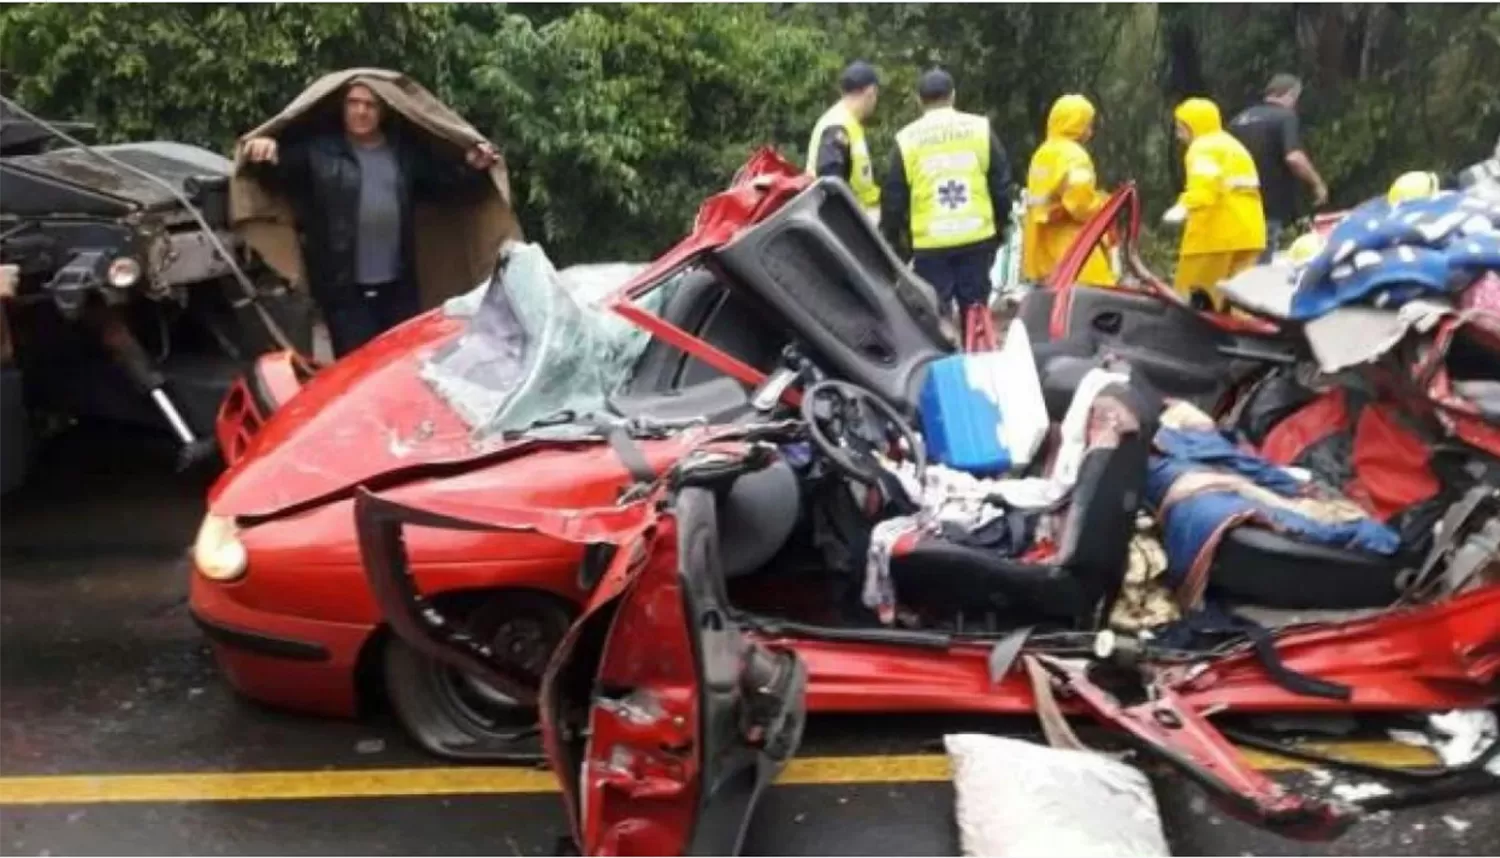 TRAGEDIA. Así quedó el Renault de los argentinos luego del accidente. FOTO TOMADA DE TN.COM.AR